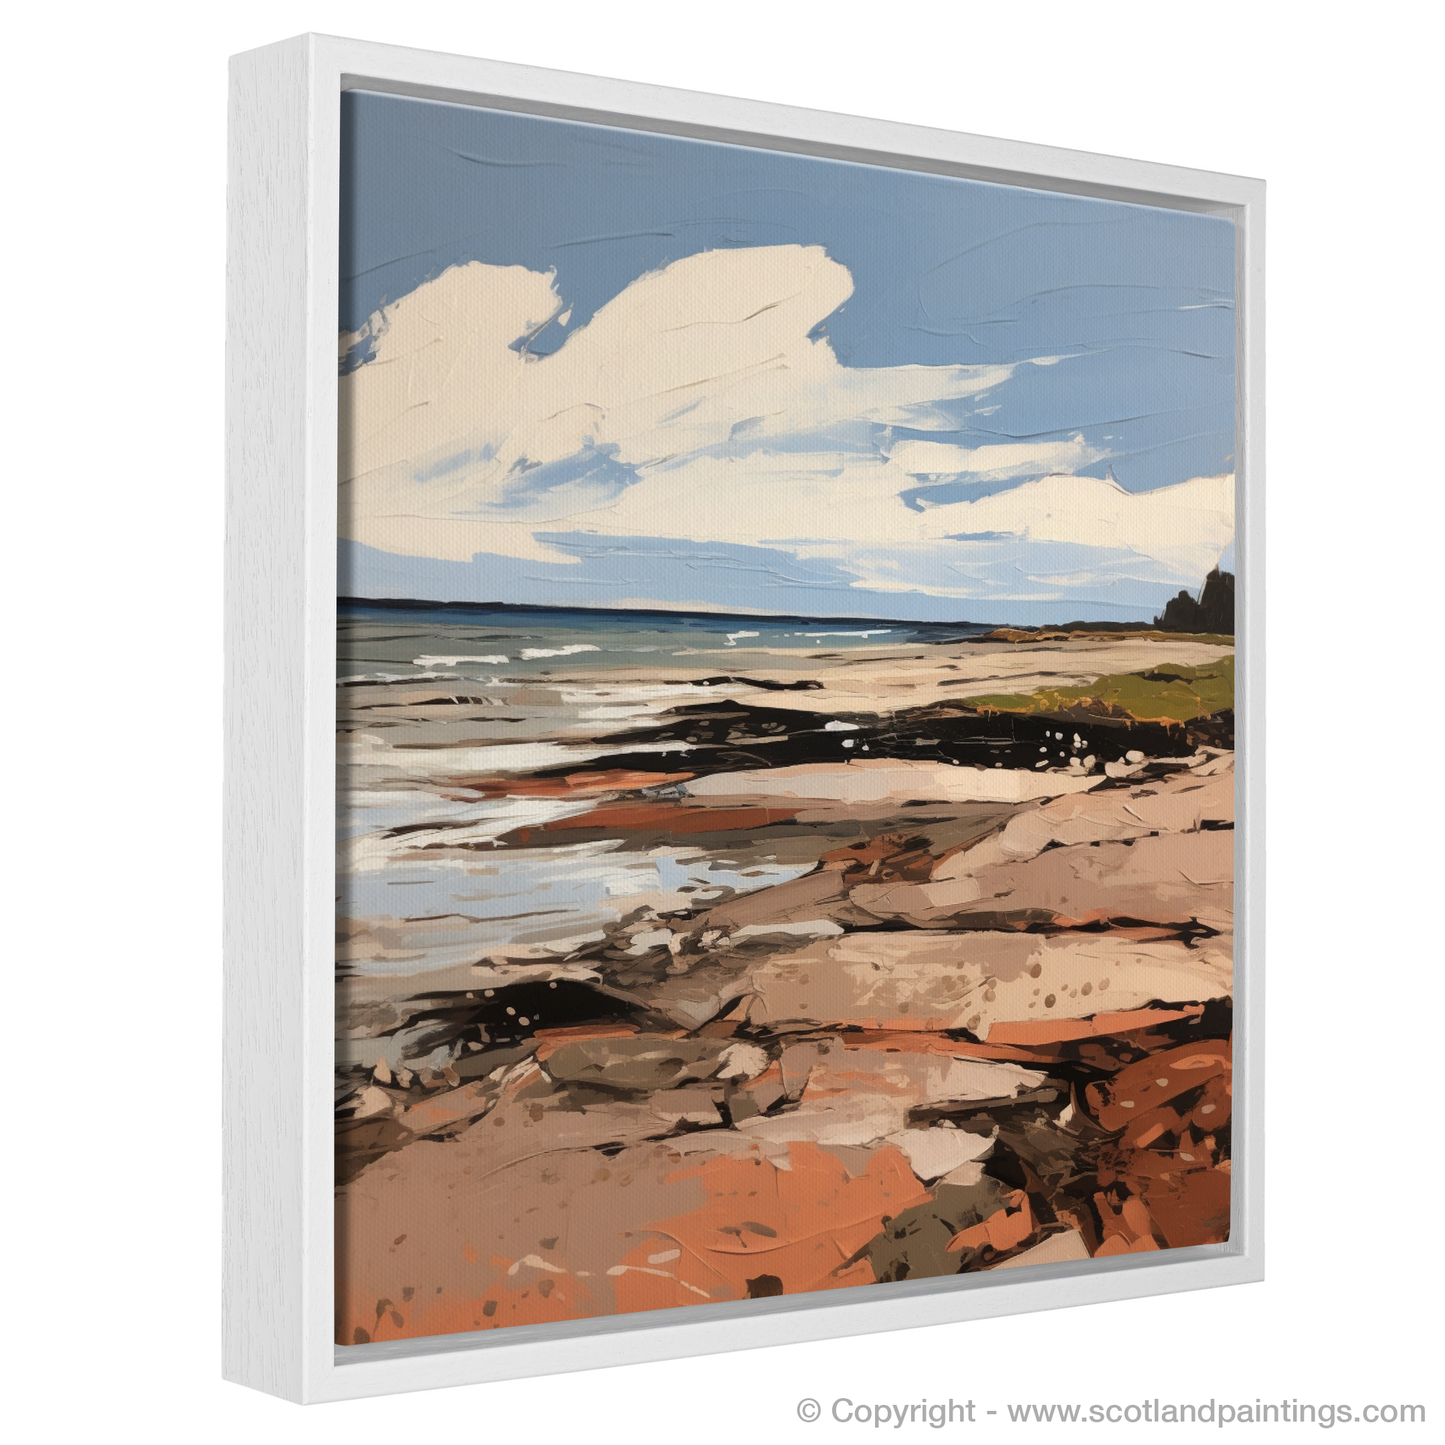 Painting and Art Print of Longniddry Beach, East Lothian in summer entitled "Summer Serenade at Longniddry Beach".